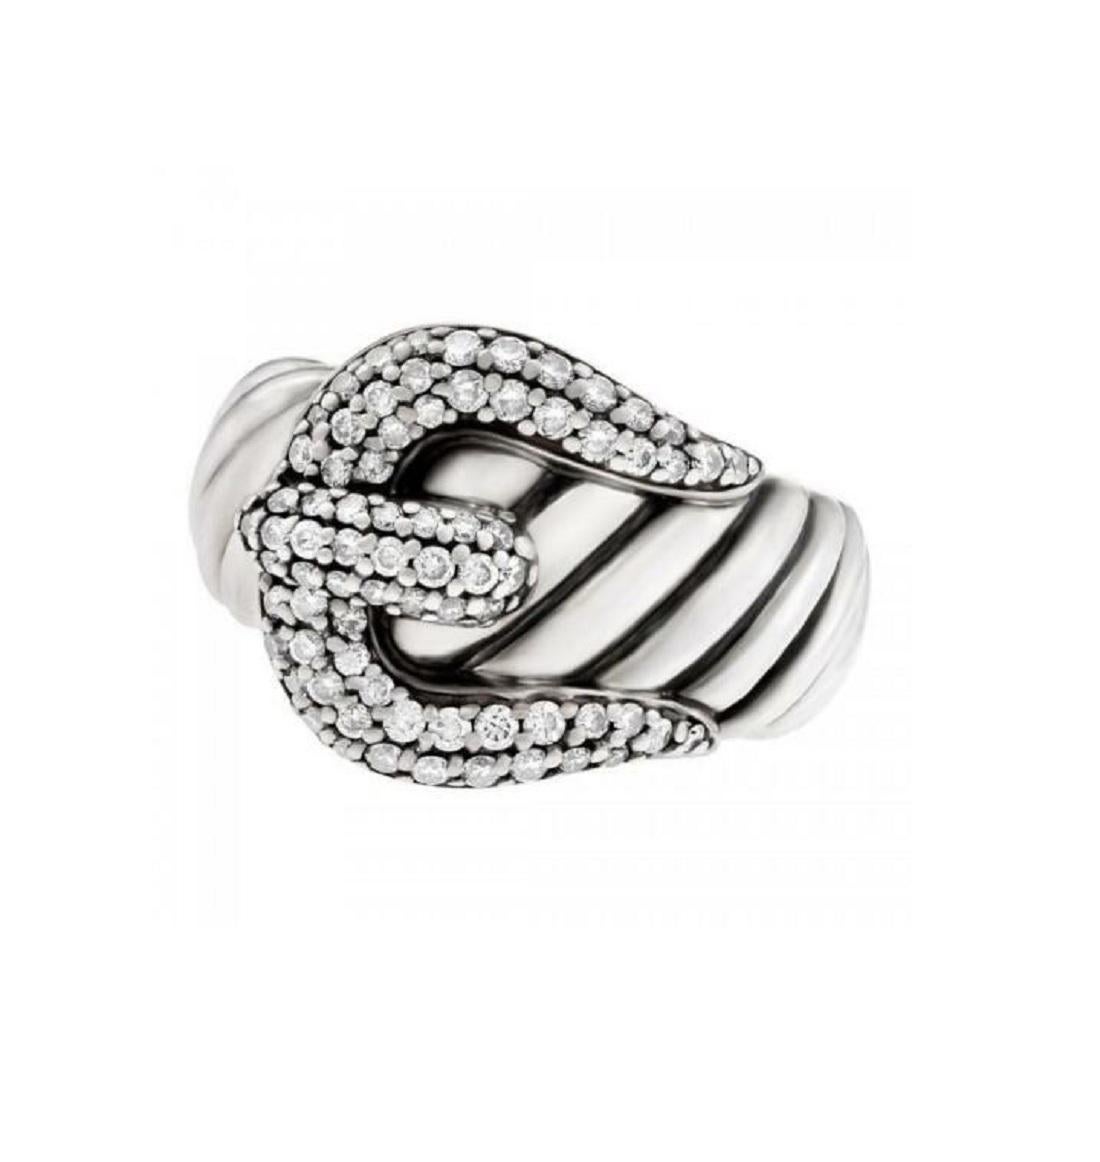 Neu, ohne Etikett
Sterling Silber
Pave-Diamant
Ringgröße: 5
Ringbreite: 6-16mm
Kommt mit David Yurman  Beutel
Ursprünglicher Verkaufspreis: $700